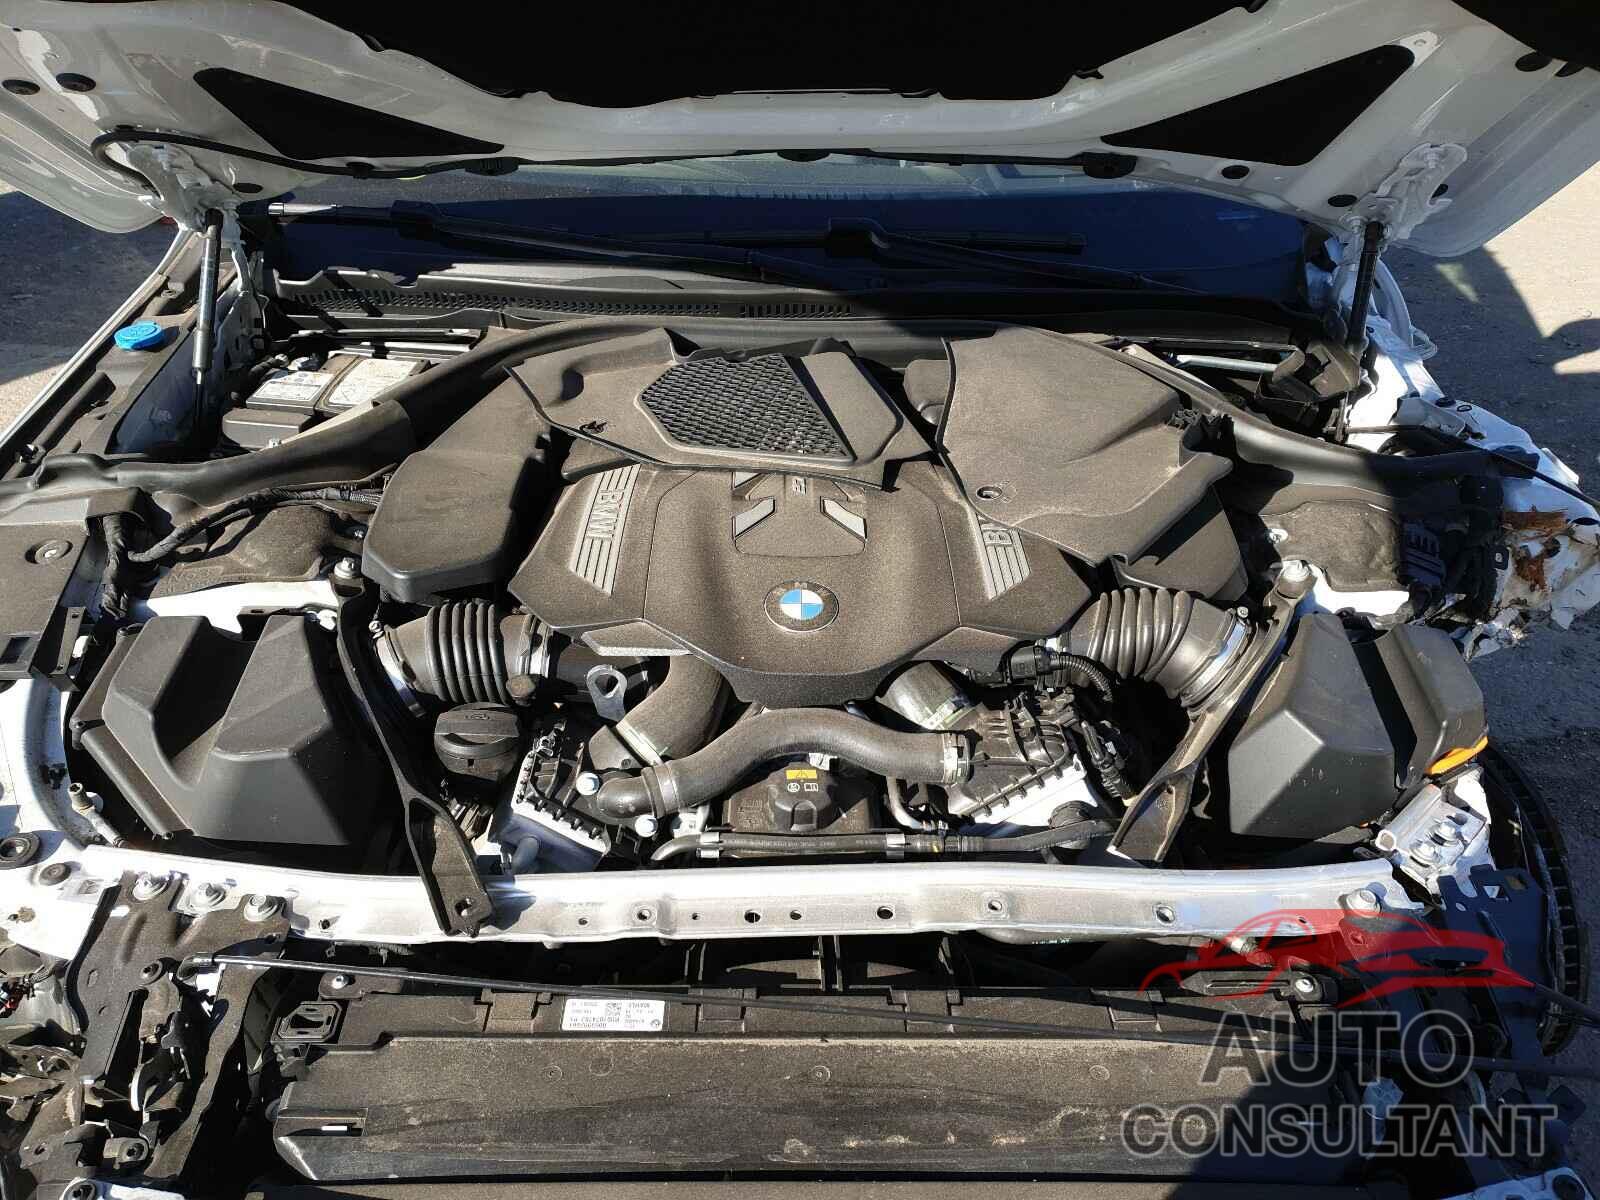 BMW M8 2019 - WBAFY4C59KBX39521